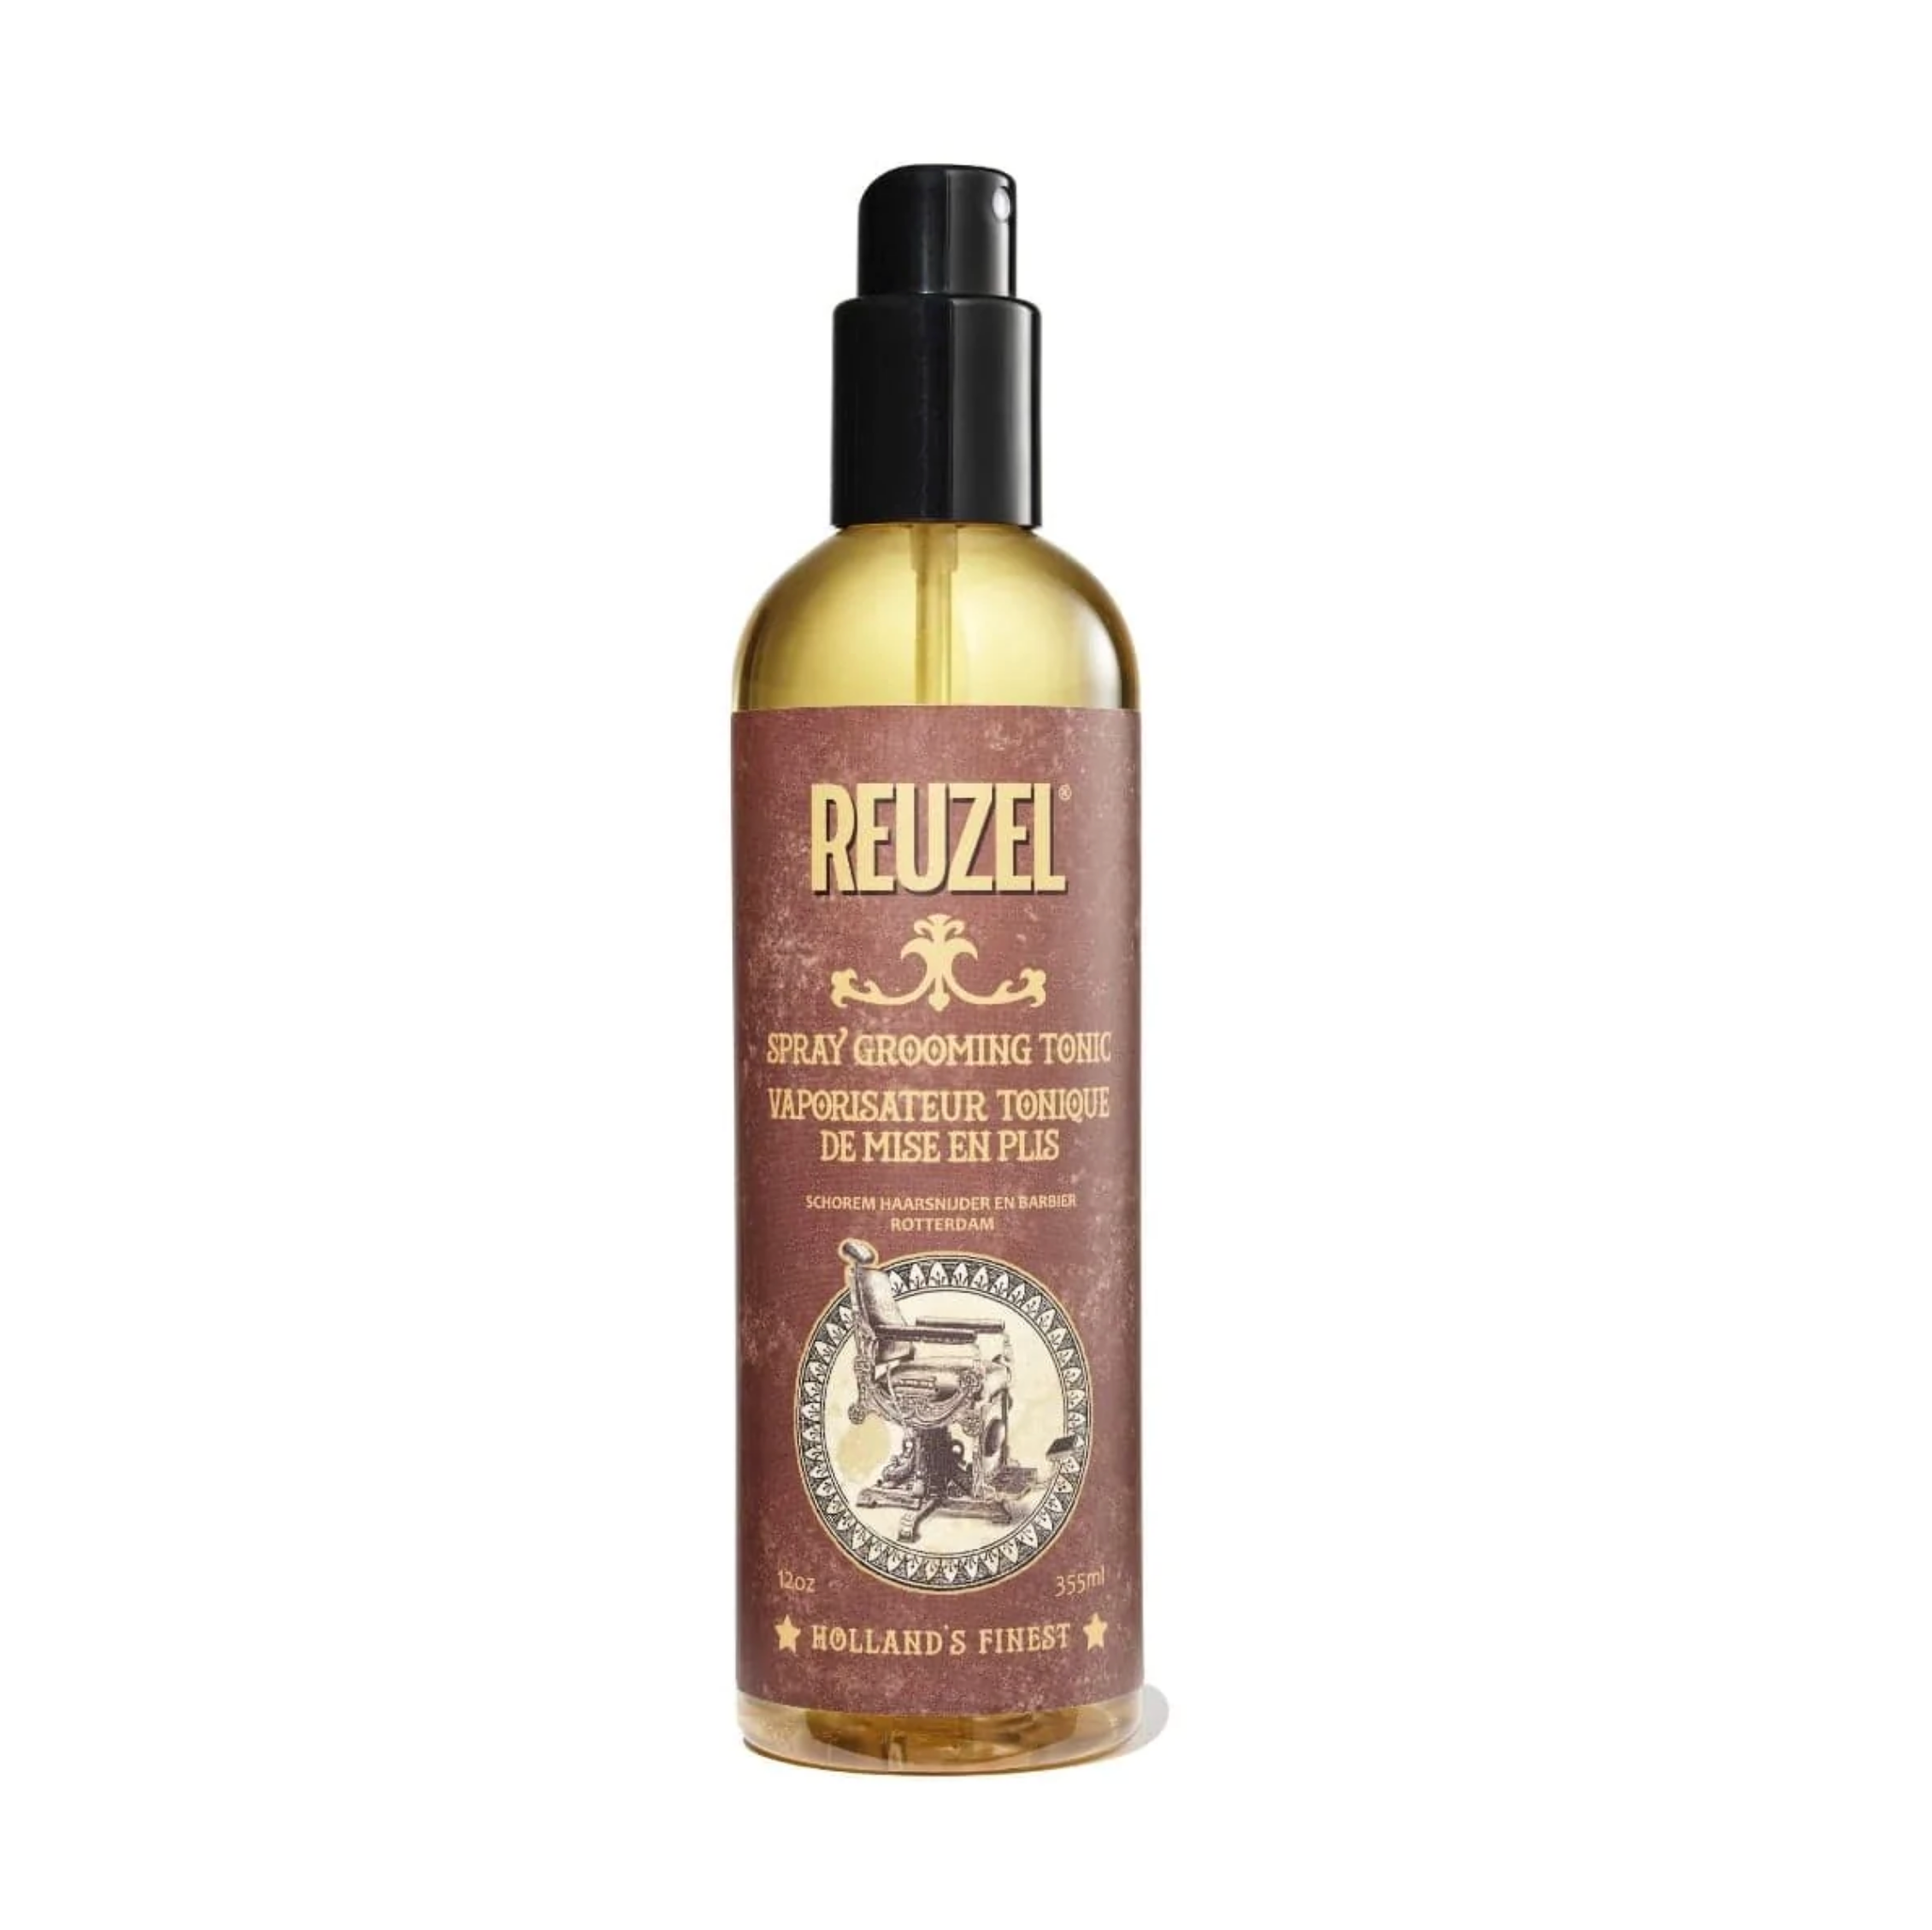 Spray grooming tonic, Vaporisateur tonique de mise en plis Reuzel - Crème Salon